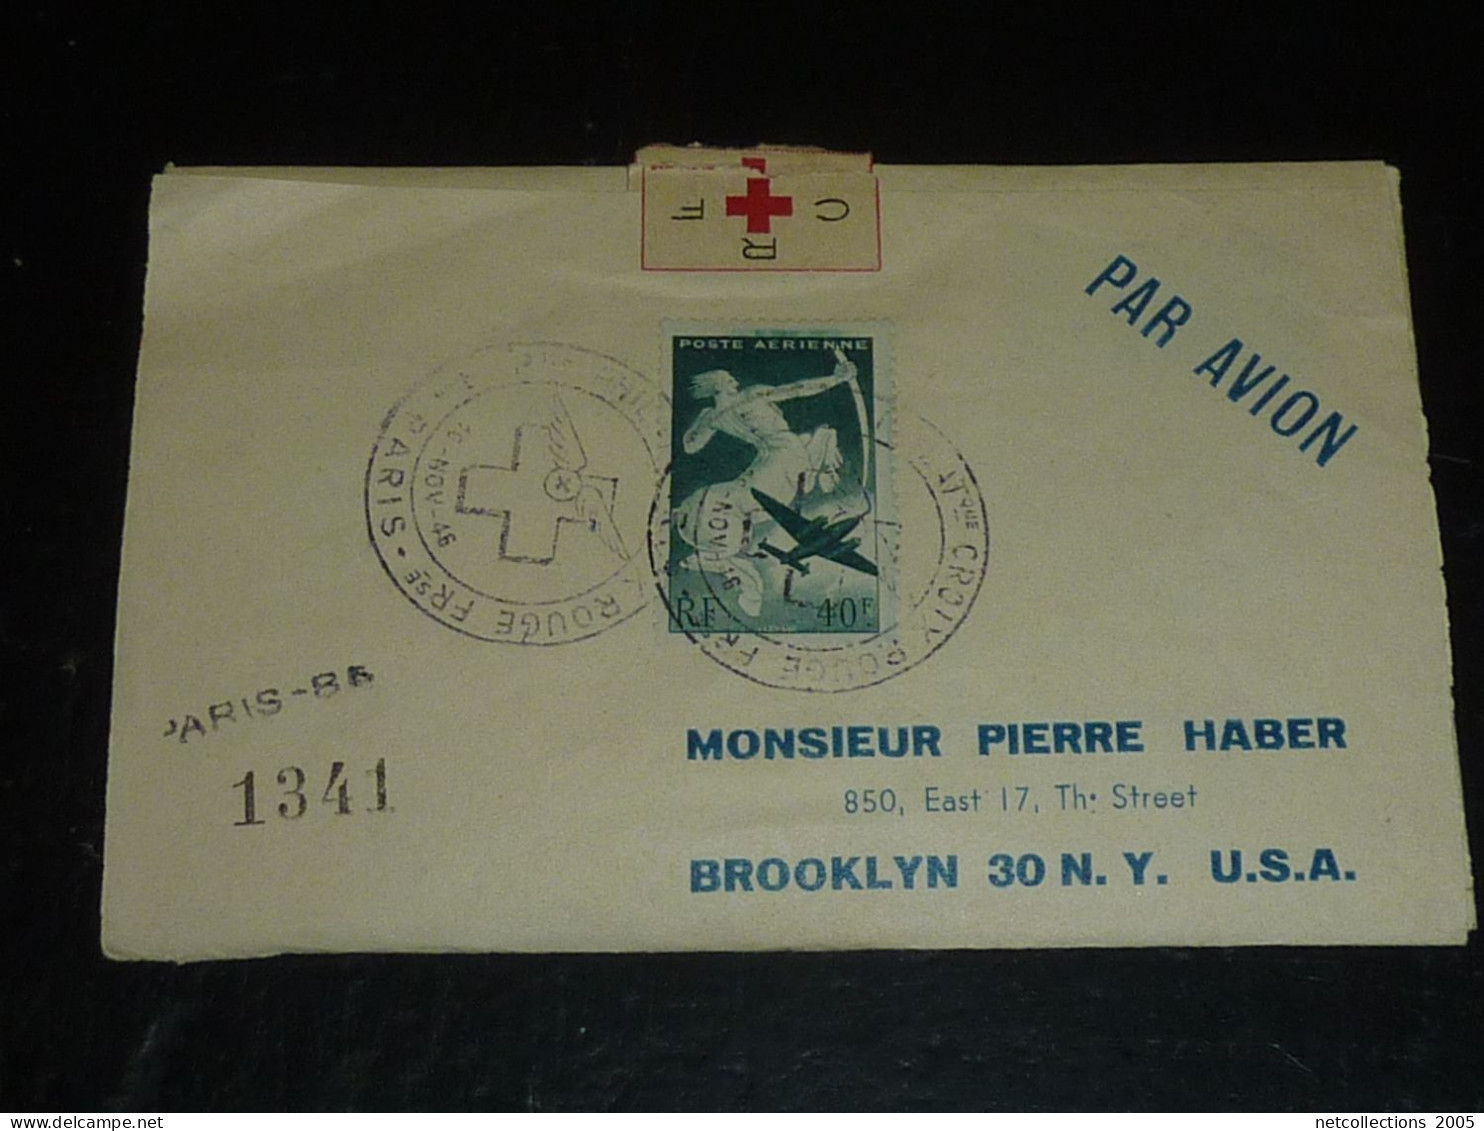 TOUR DU MONDE; CROIX ROUGE - PARIS NEW-YORK 18/11/1946 AU 21/11/1946 - NEW-YORK BRUXELLES - BRUXELLES PARIS ARRIVEE (CB) - Croce Rossa